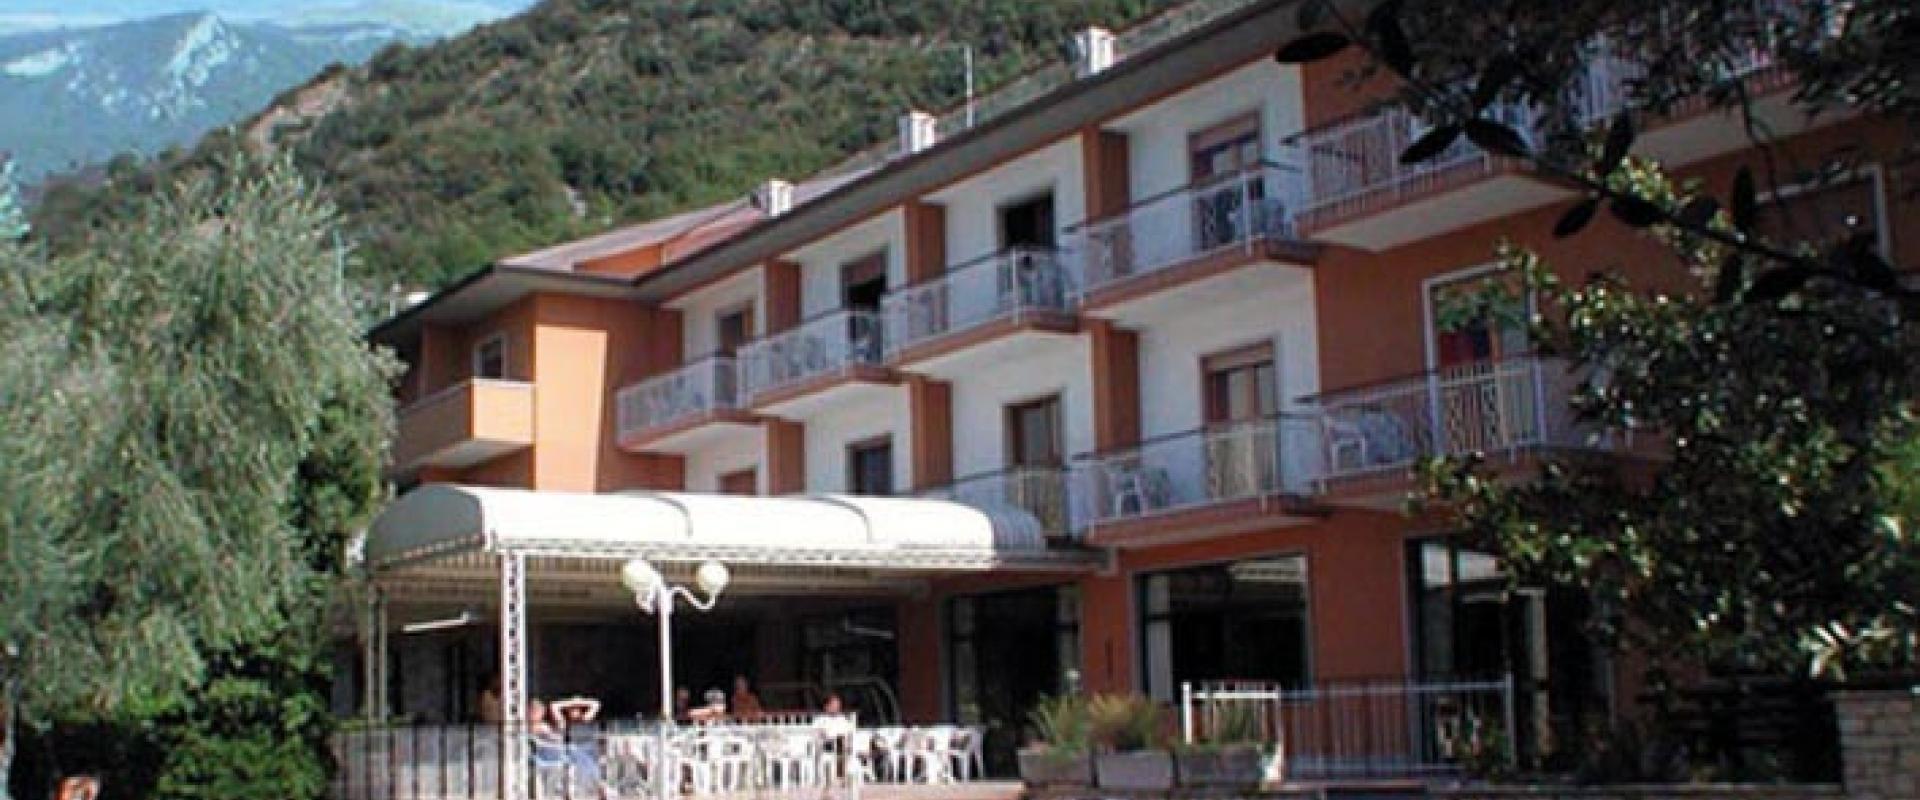 14837 Motorrad Hotel Alpi am Gardasee/Trentino.jpg